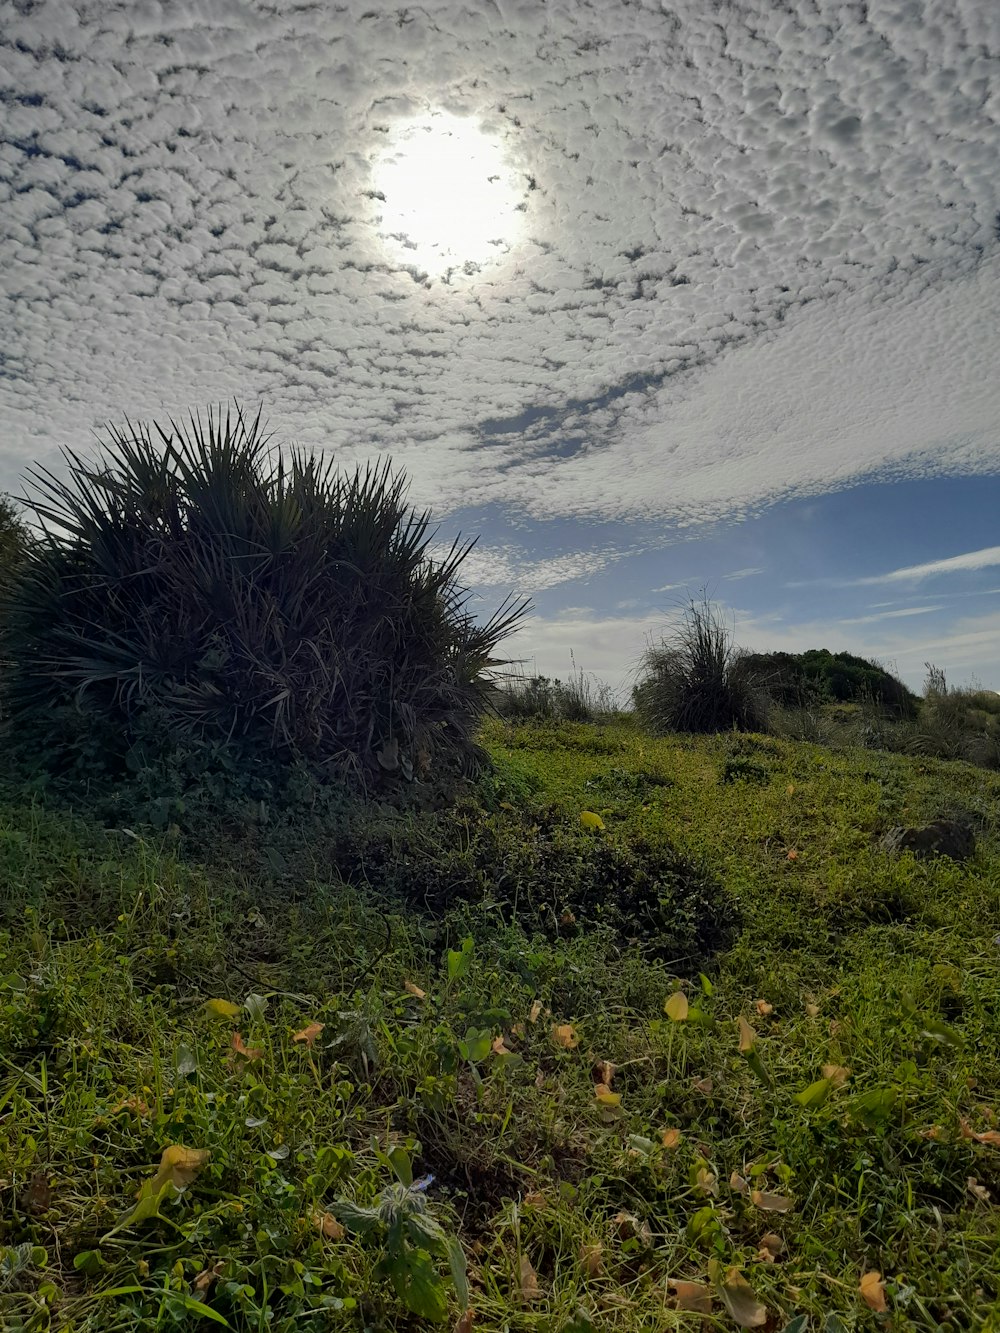 El sol brilla a través de las nubes sobre un campo cubierto de hierba